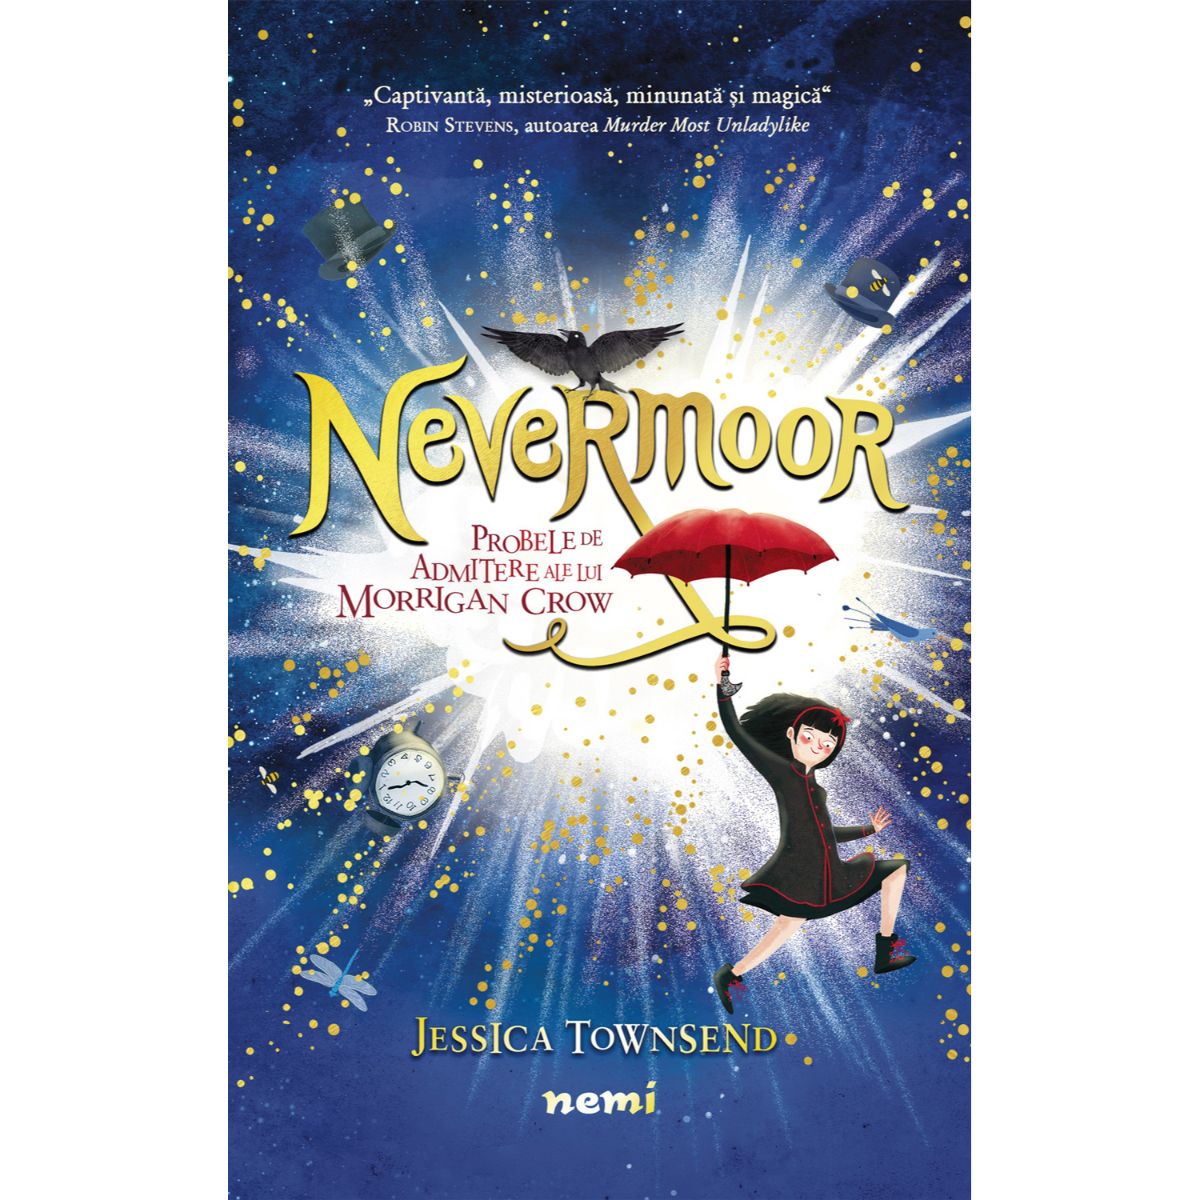 Nevermoor, Probele de admitere ale lui Morrigan Crow, Jessica Townsend admitere